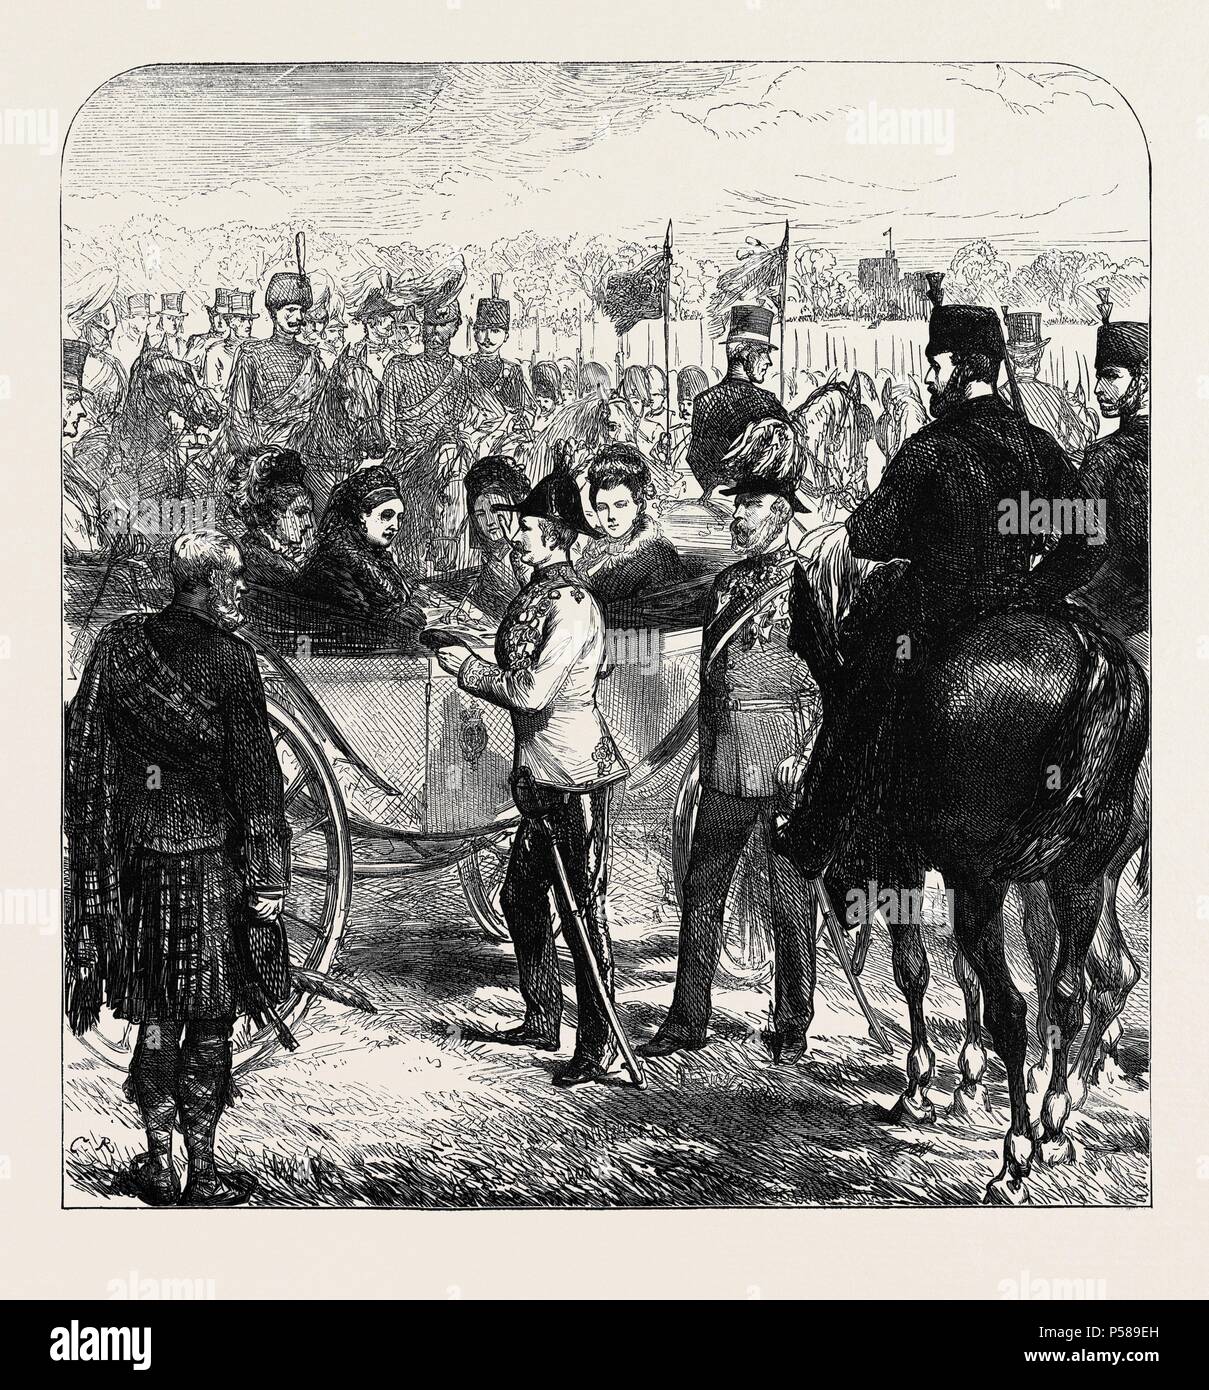 La revisione a Windsor: LA REGINA PRESENTANDO LA CROCE DI ST. MICHAEL E ST. GEORGE A SIR GARNET WOLSELEY, 1874. Foto Stock